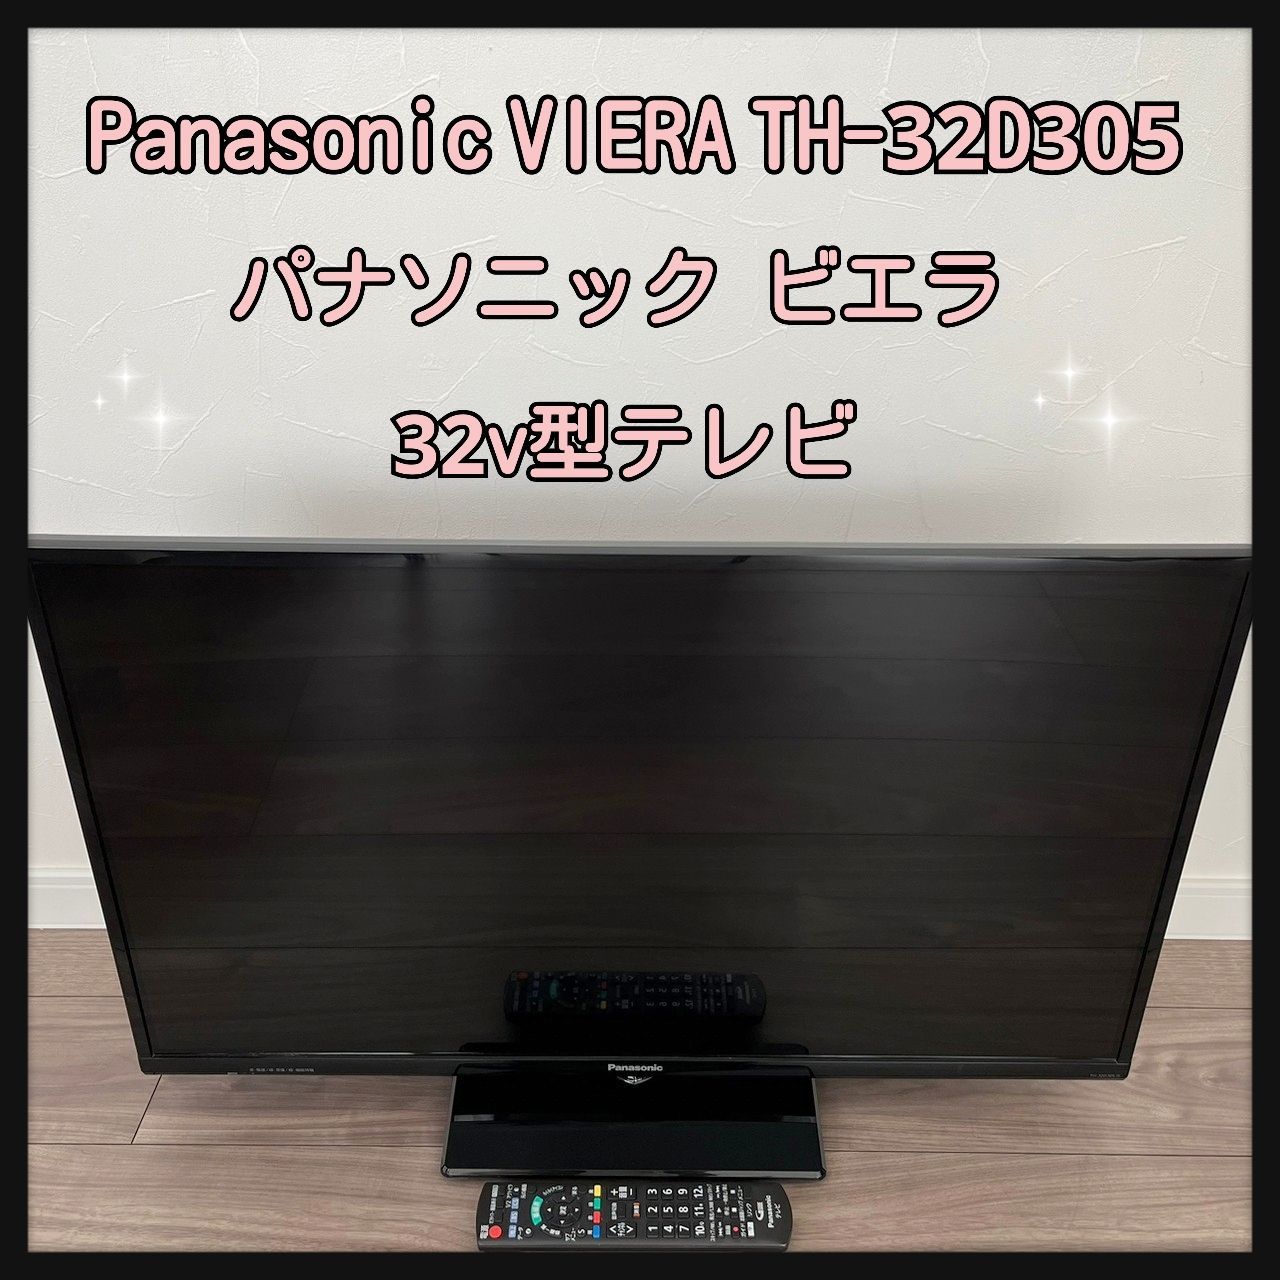 パナソニックパナソニック 32V型 液晶テレビ ビエラ TH-32D305 - テレビ